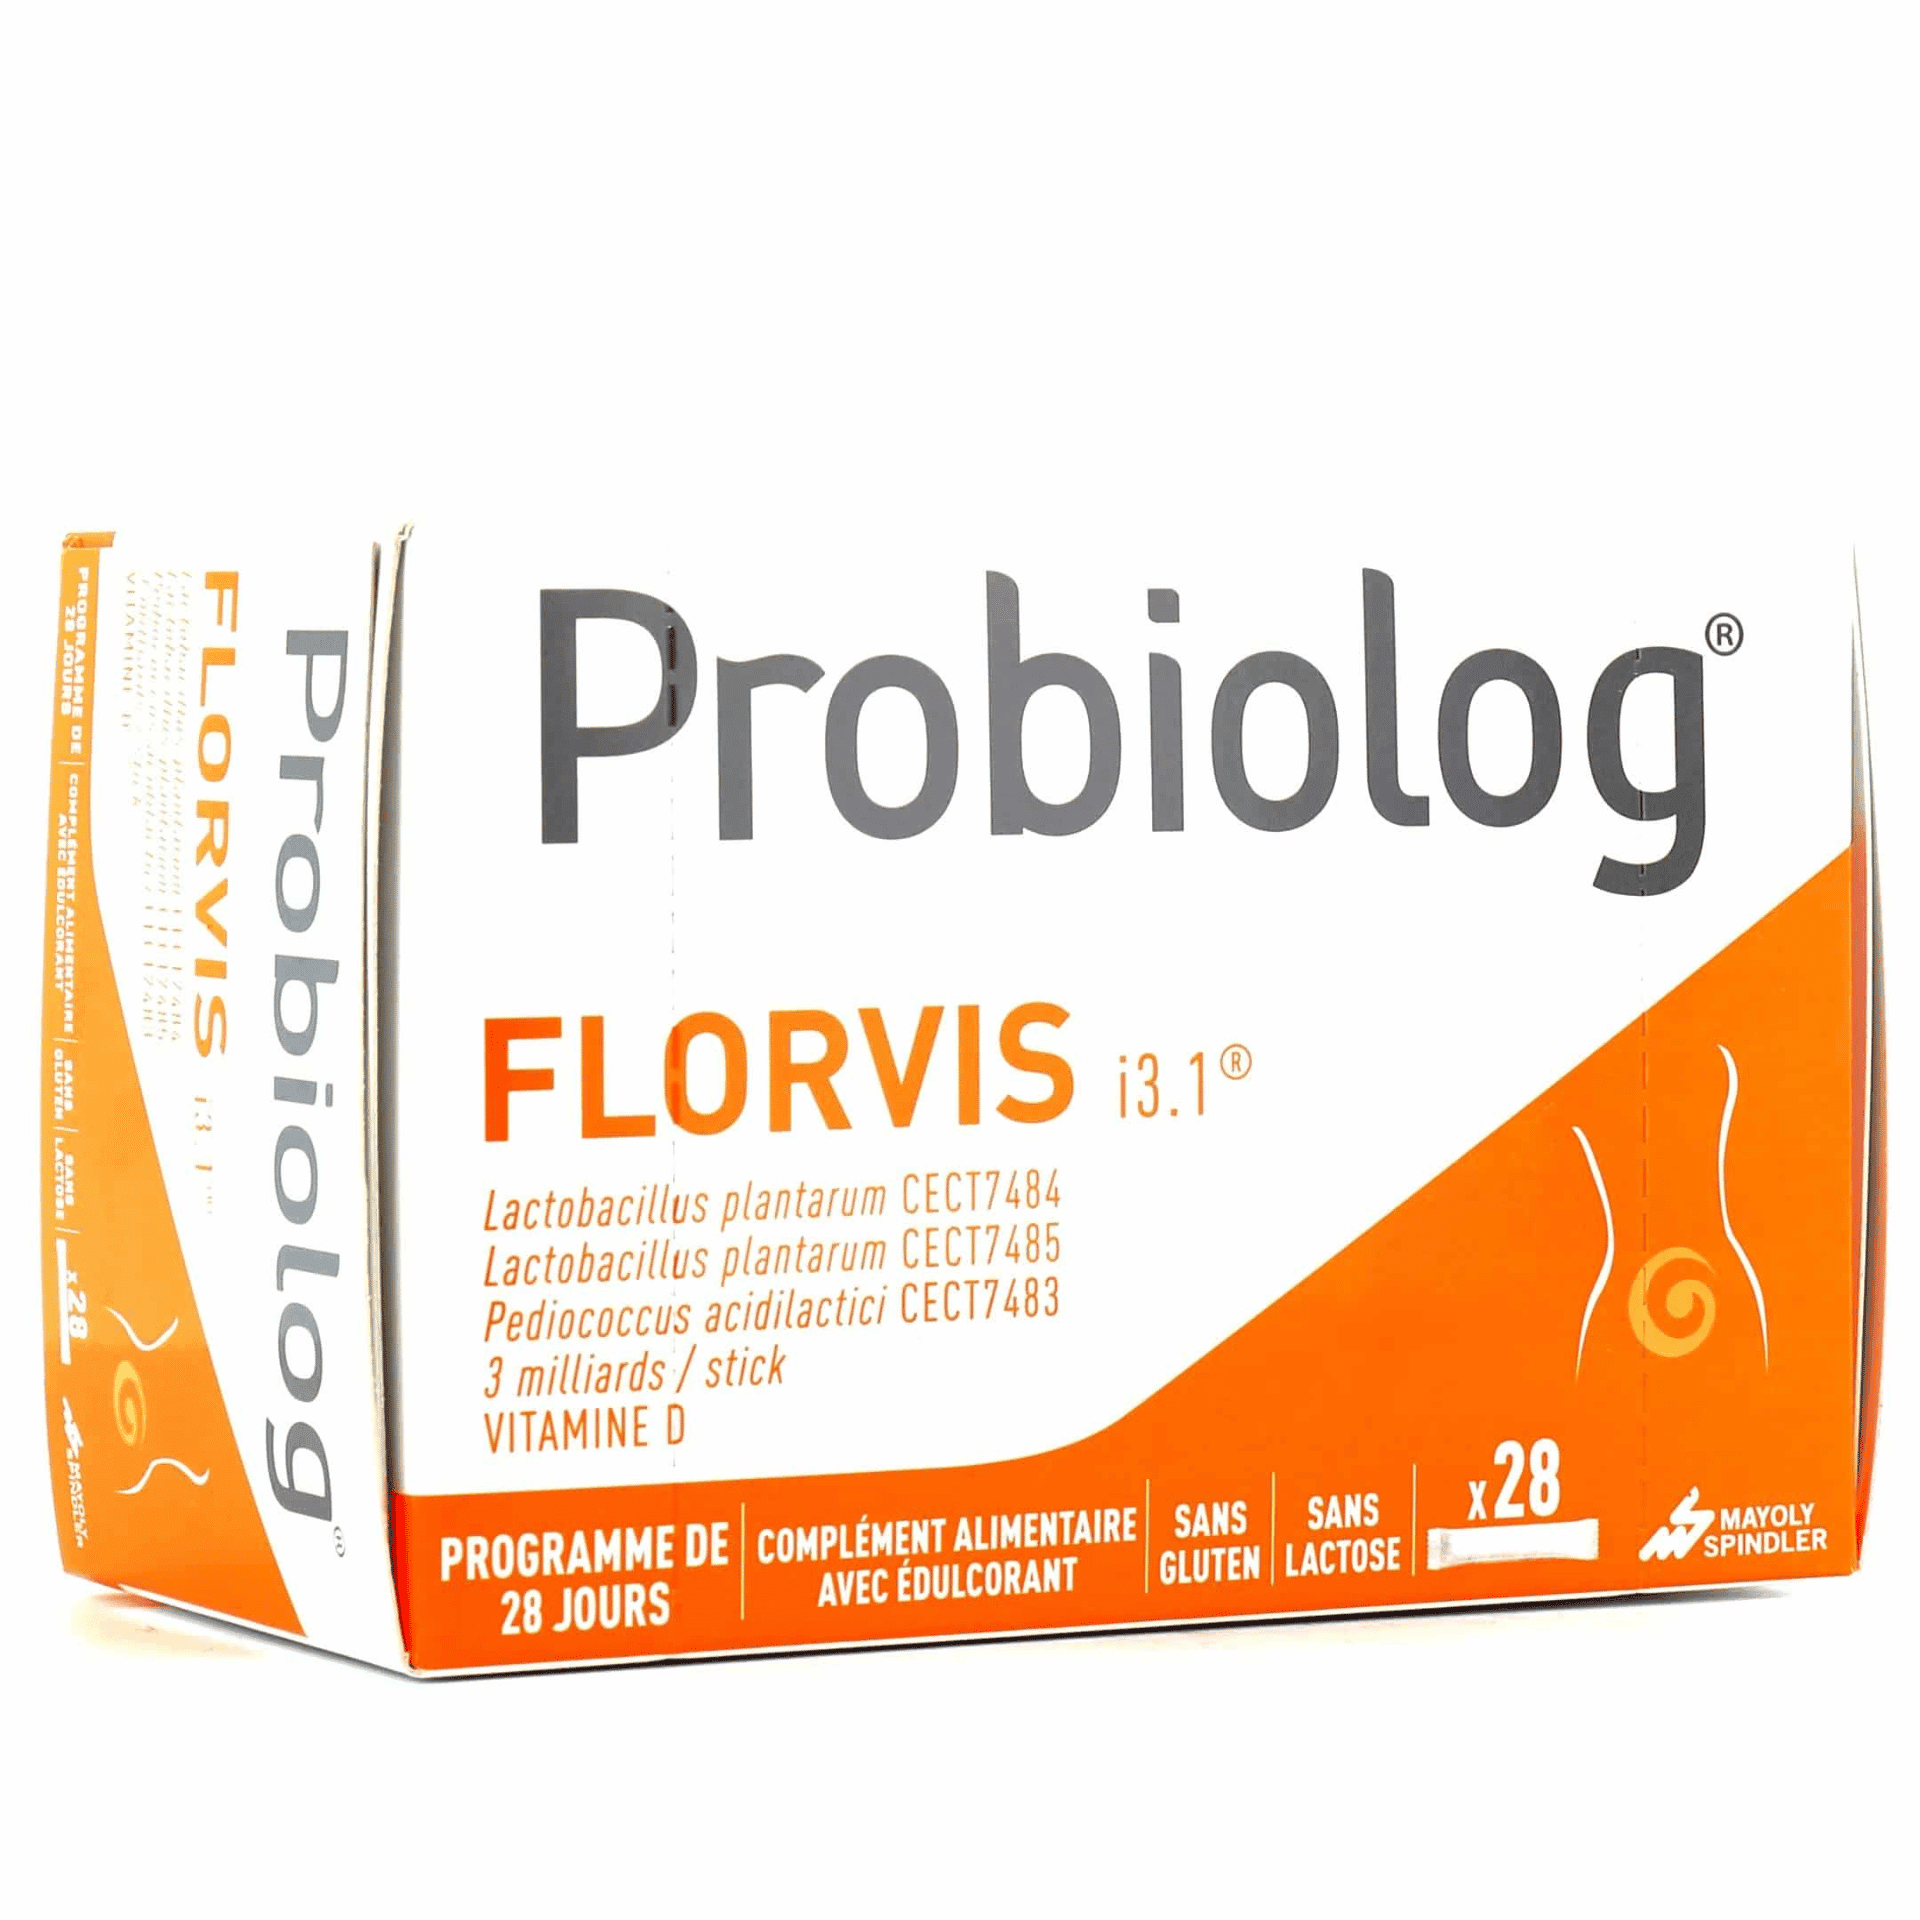 Probiolog Florvis 25 sticks